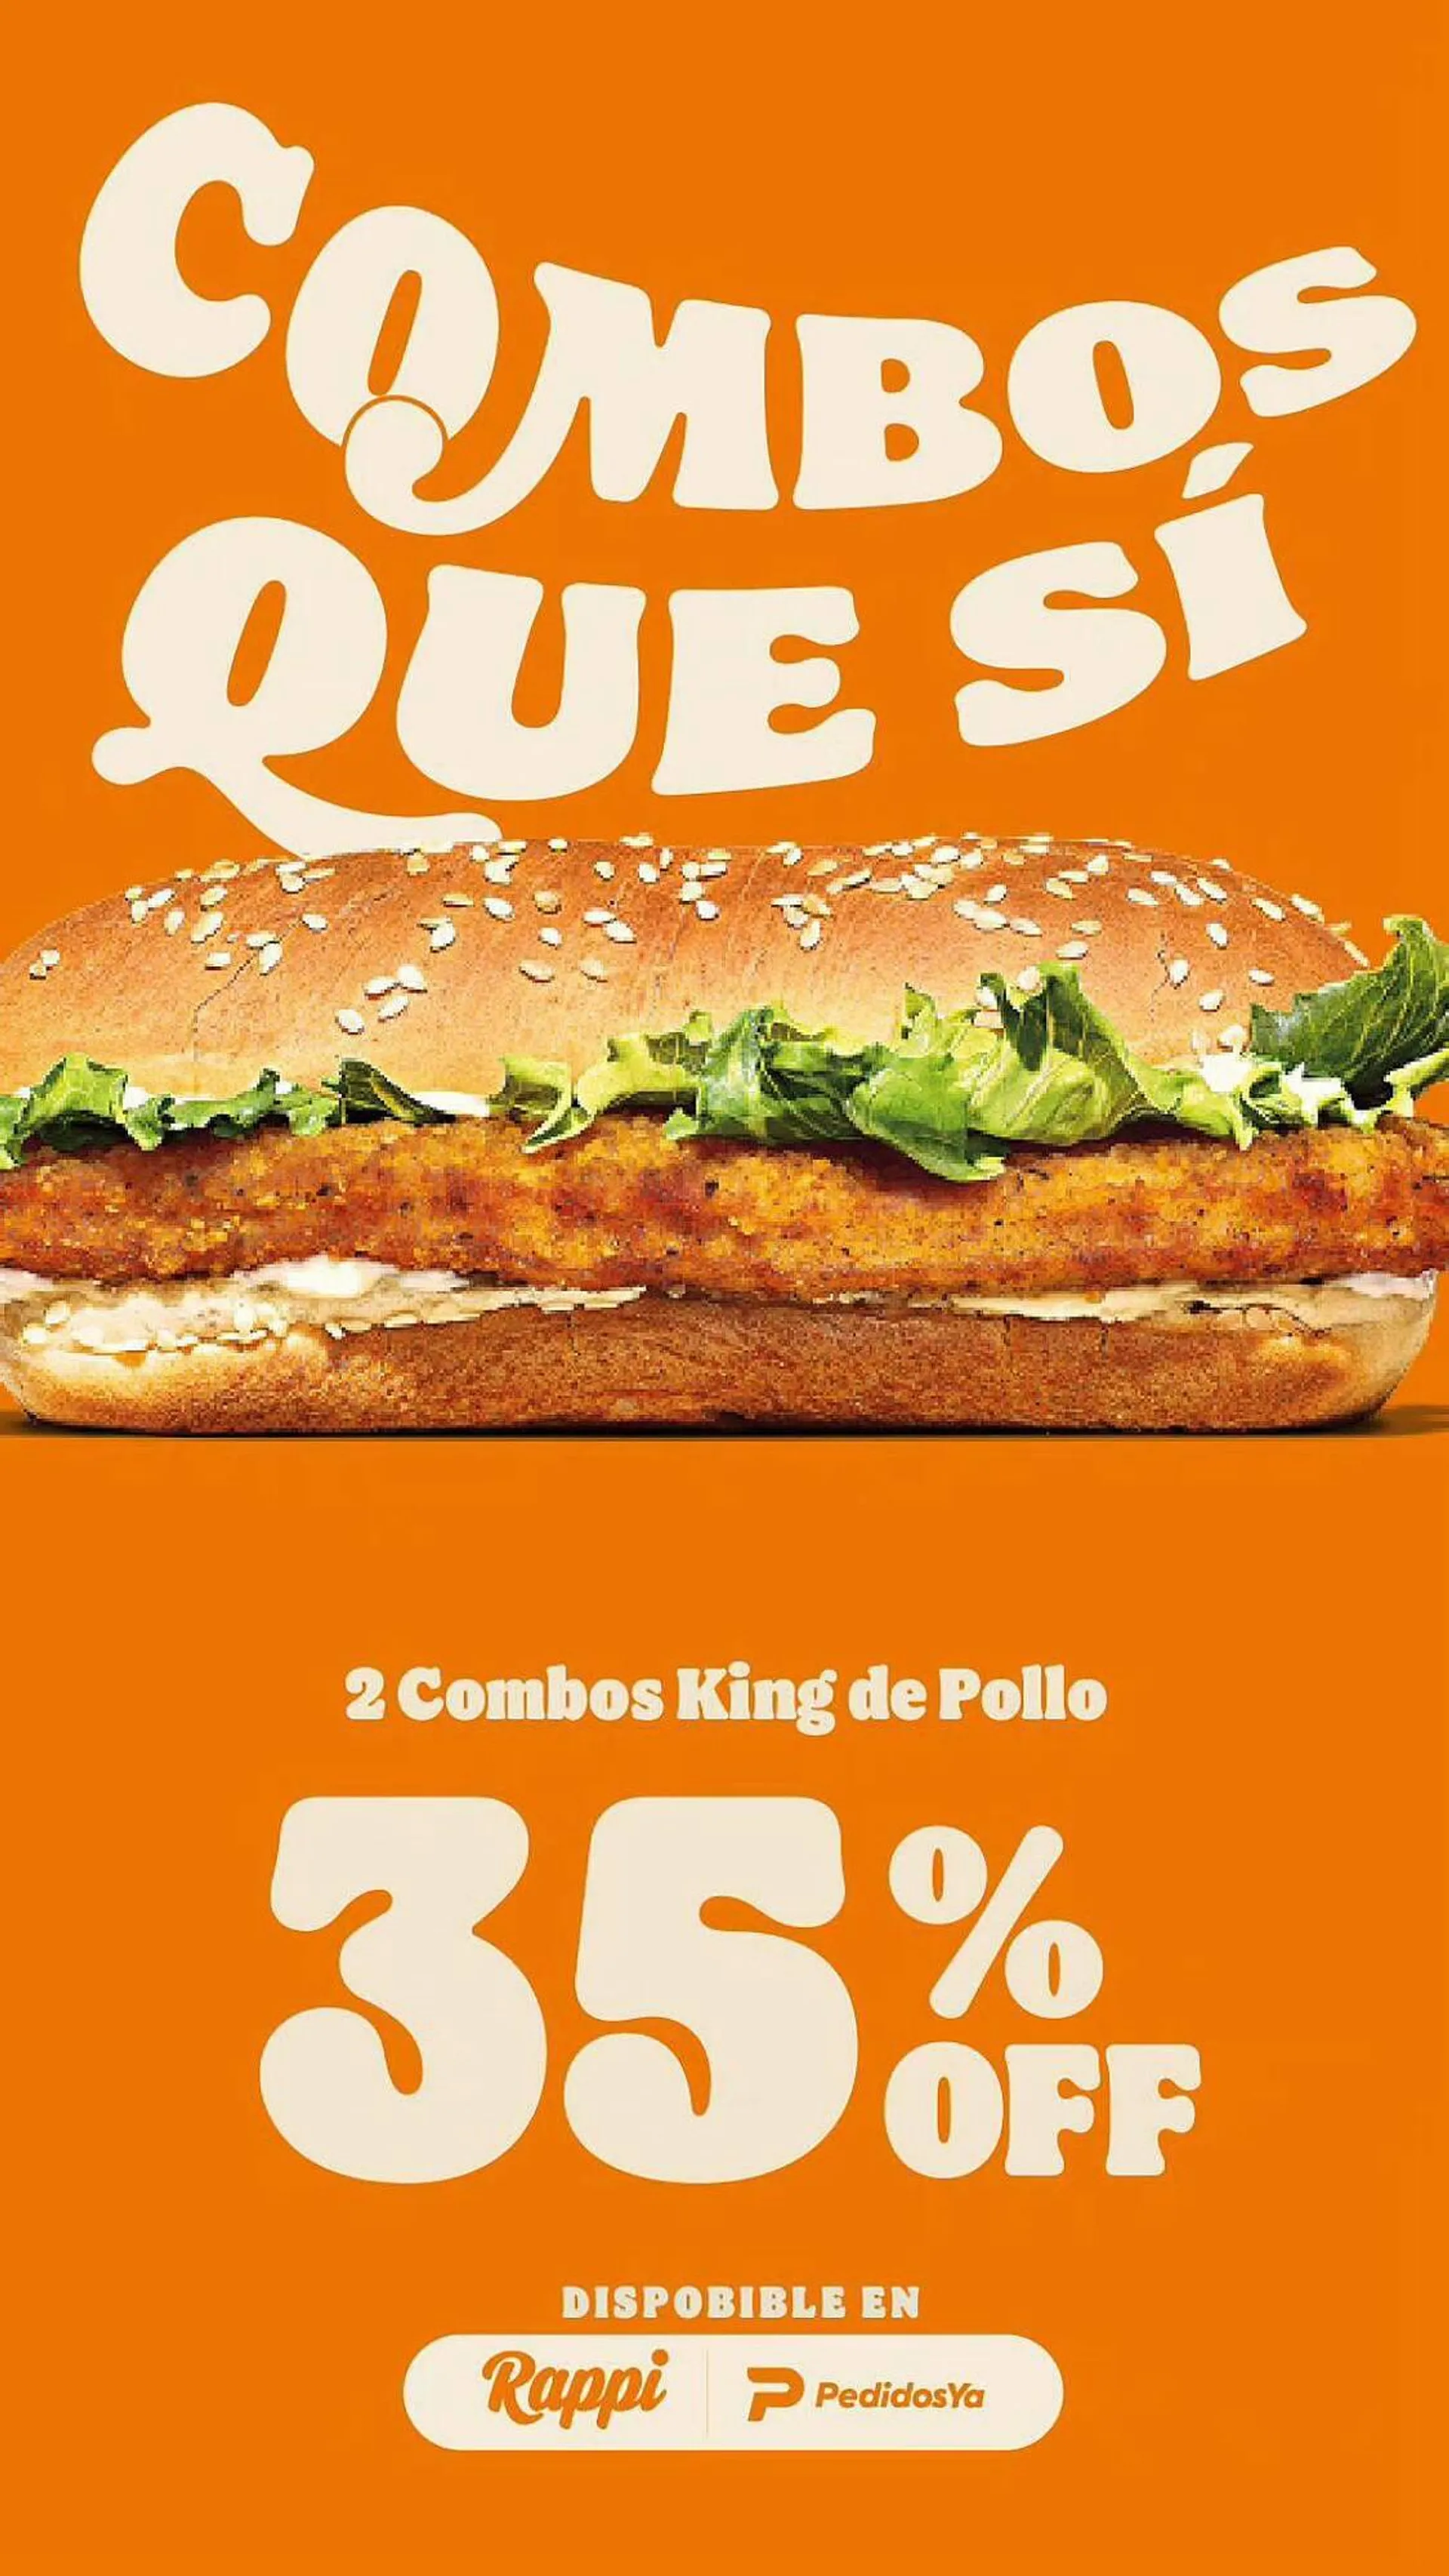 Catálogo Burger King - 2